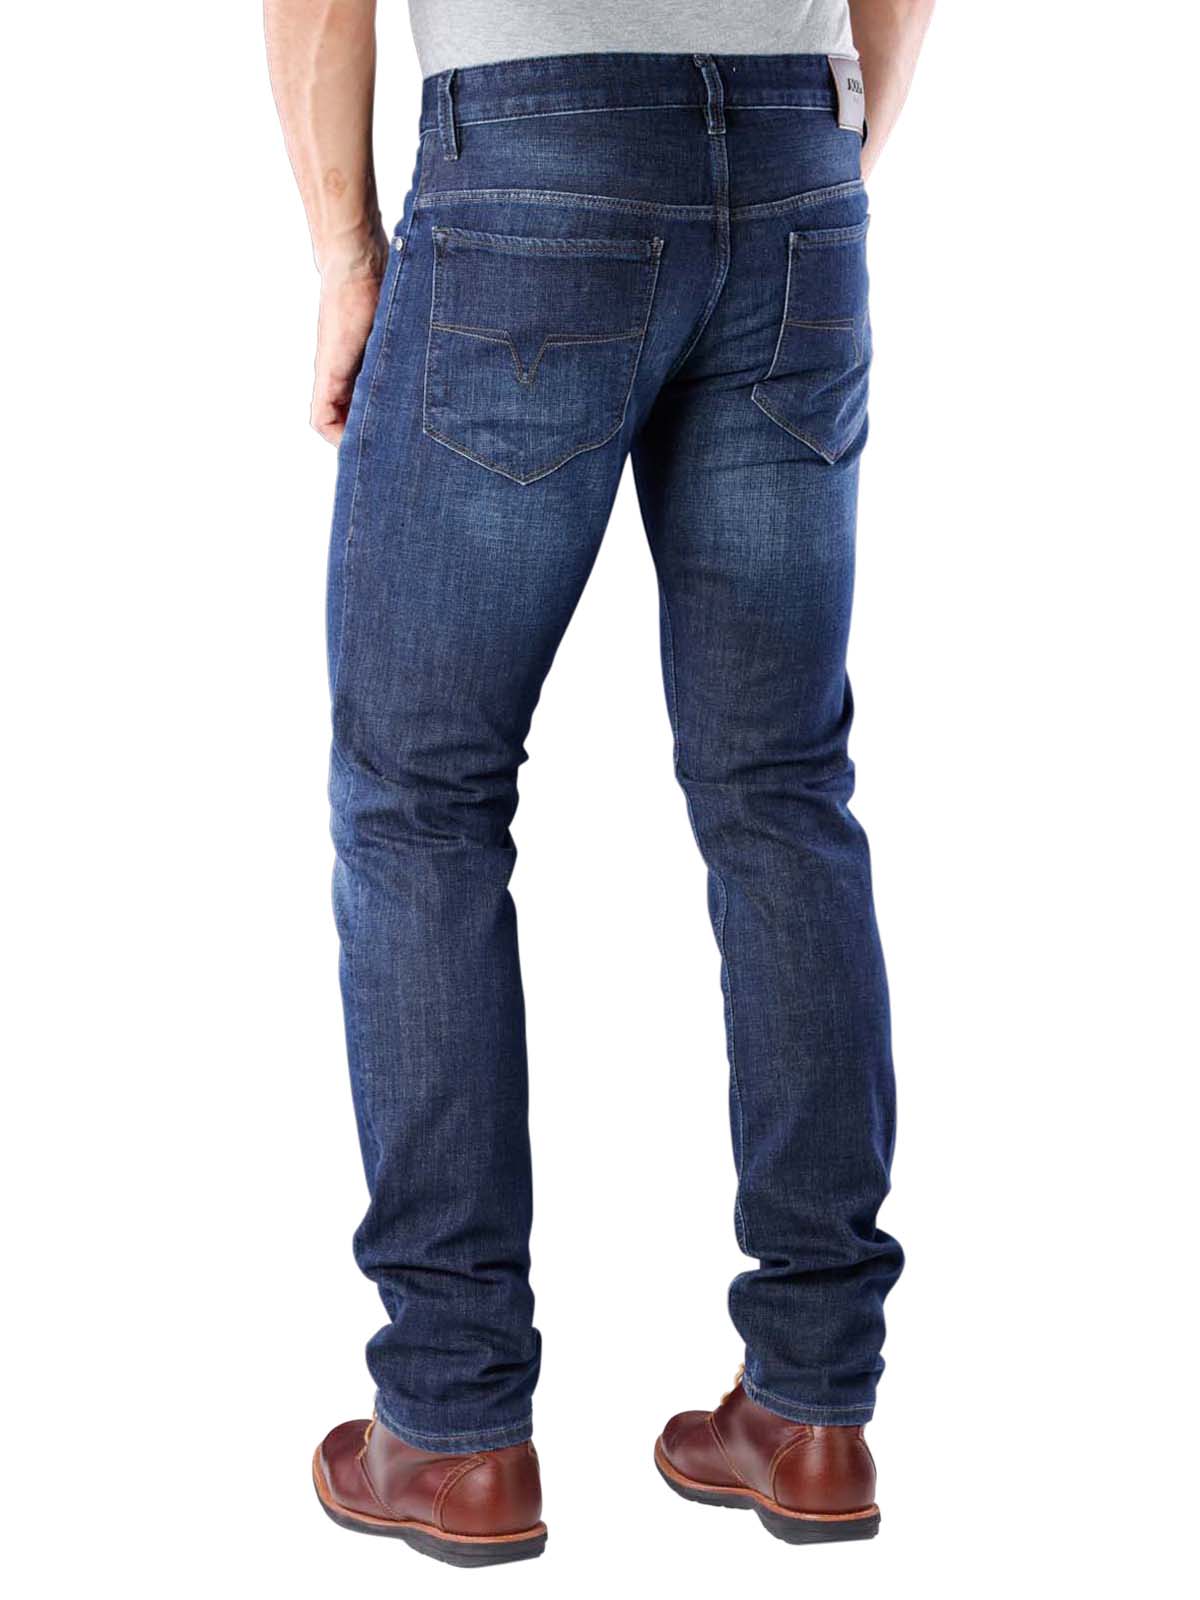 joop stephen jeans